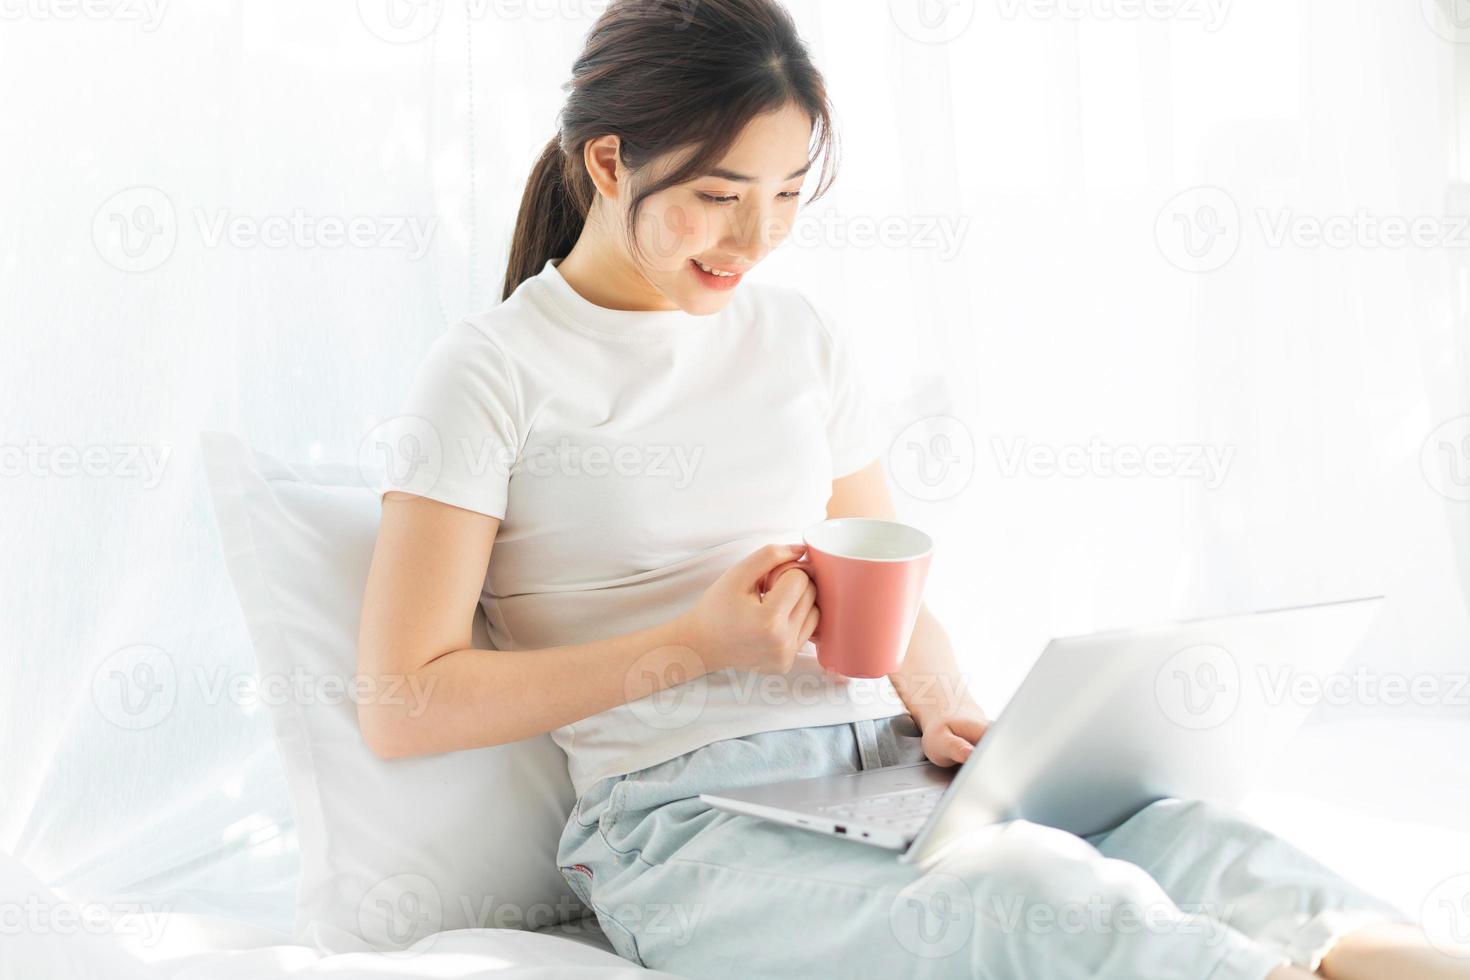 jeune femme asiatique assise sur le lit travaillant en regardant le divertissement à domicile photo